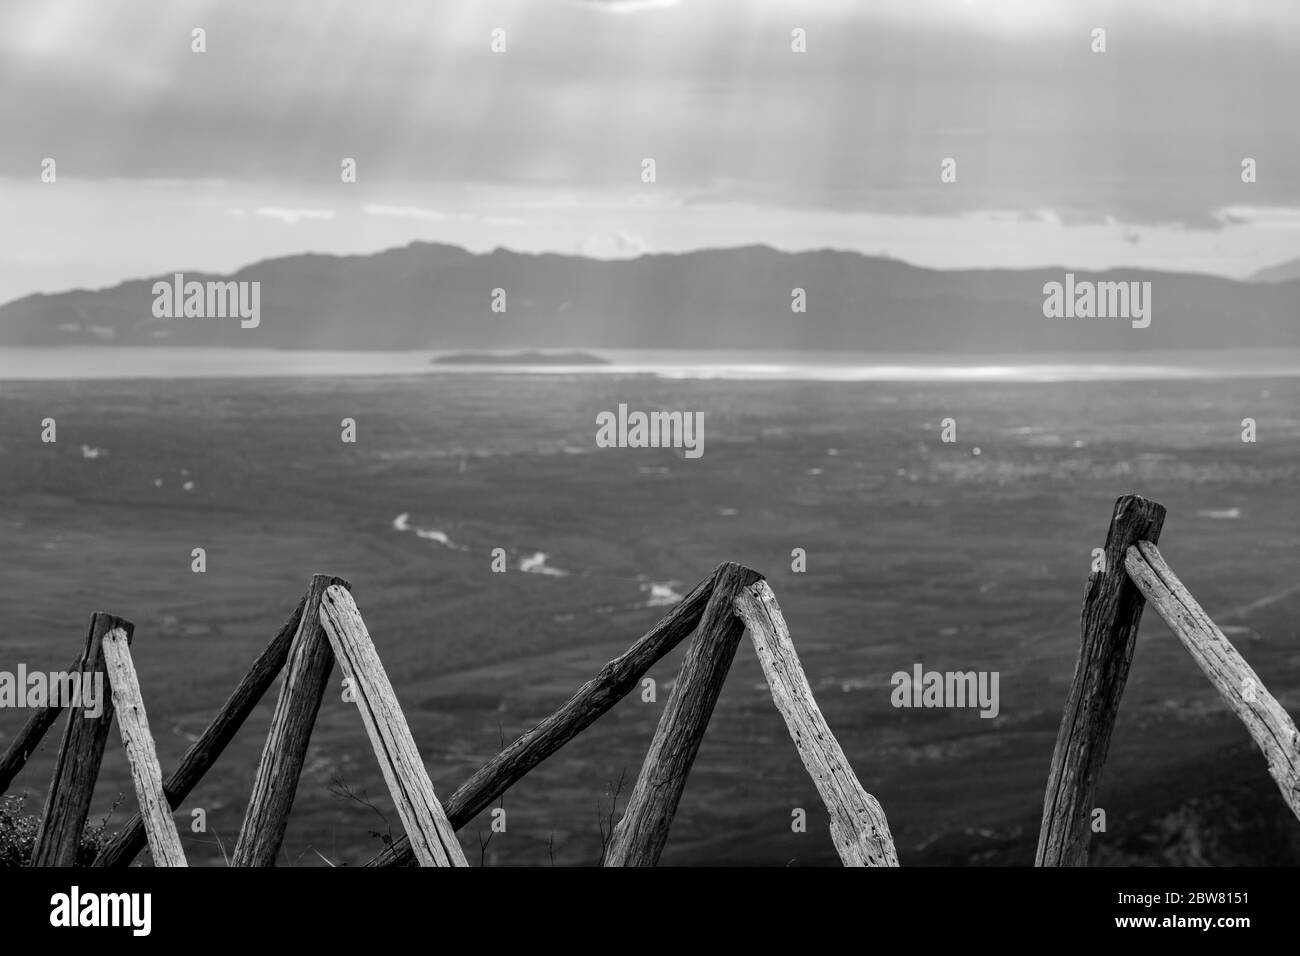 Holzzaun hoch in Bergen mit verschwommenen Sonnenstrahlen durch schwere Wolken über dem Meer in Nordgriechenland. Blick aus dem Hochwinkel von den Bergen in der griechischen Region Xanthi. Reisefoto in Schwarz und Weiß Stockfoto